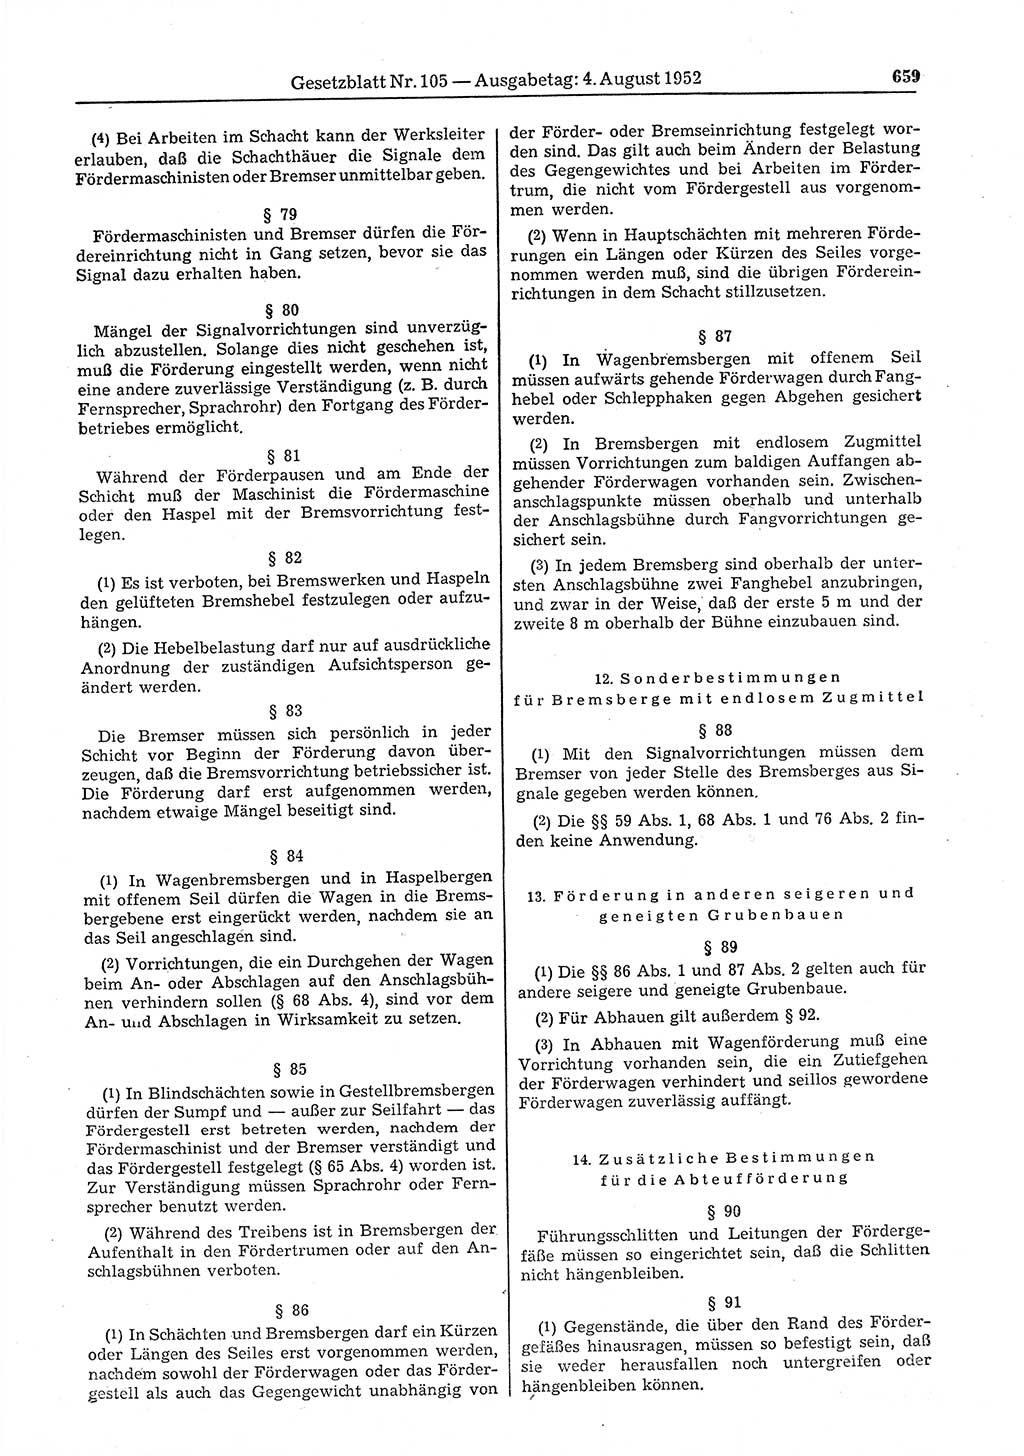 Gesetzblatt (GBl.) der Deutschen Demokratischen Republik (DDR) 1952, Seite 659 (GBl. DDR 1952, S. 659)